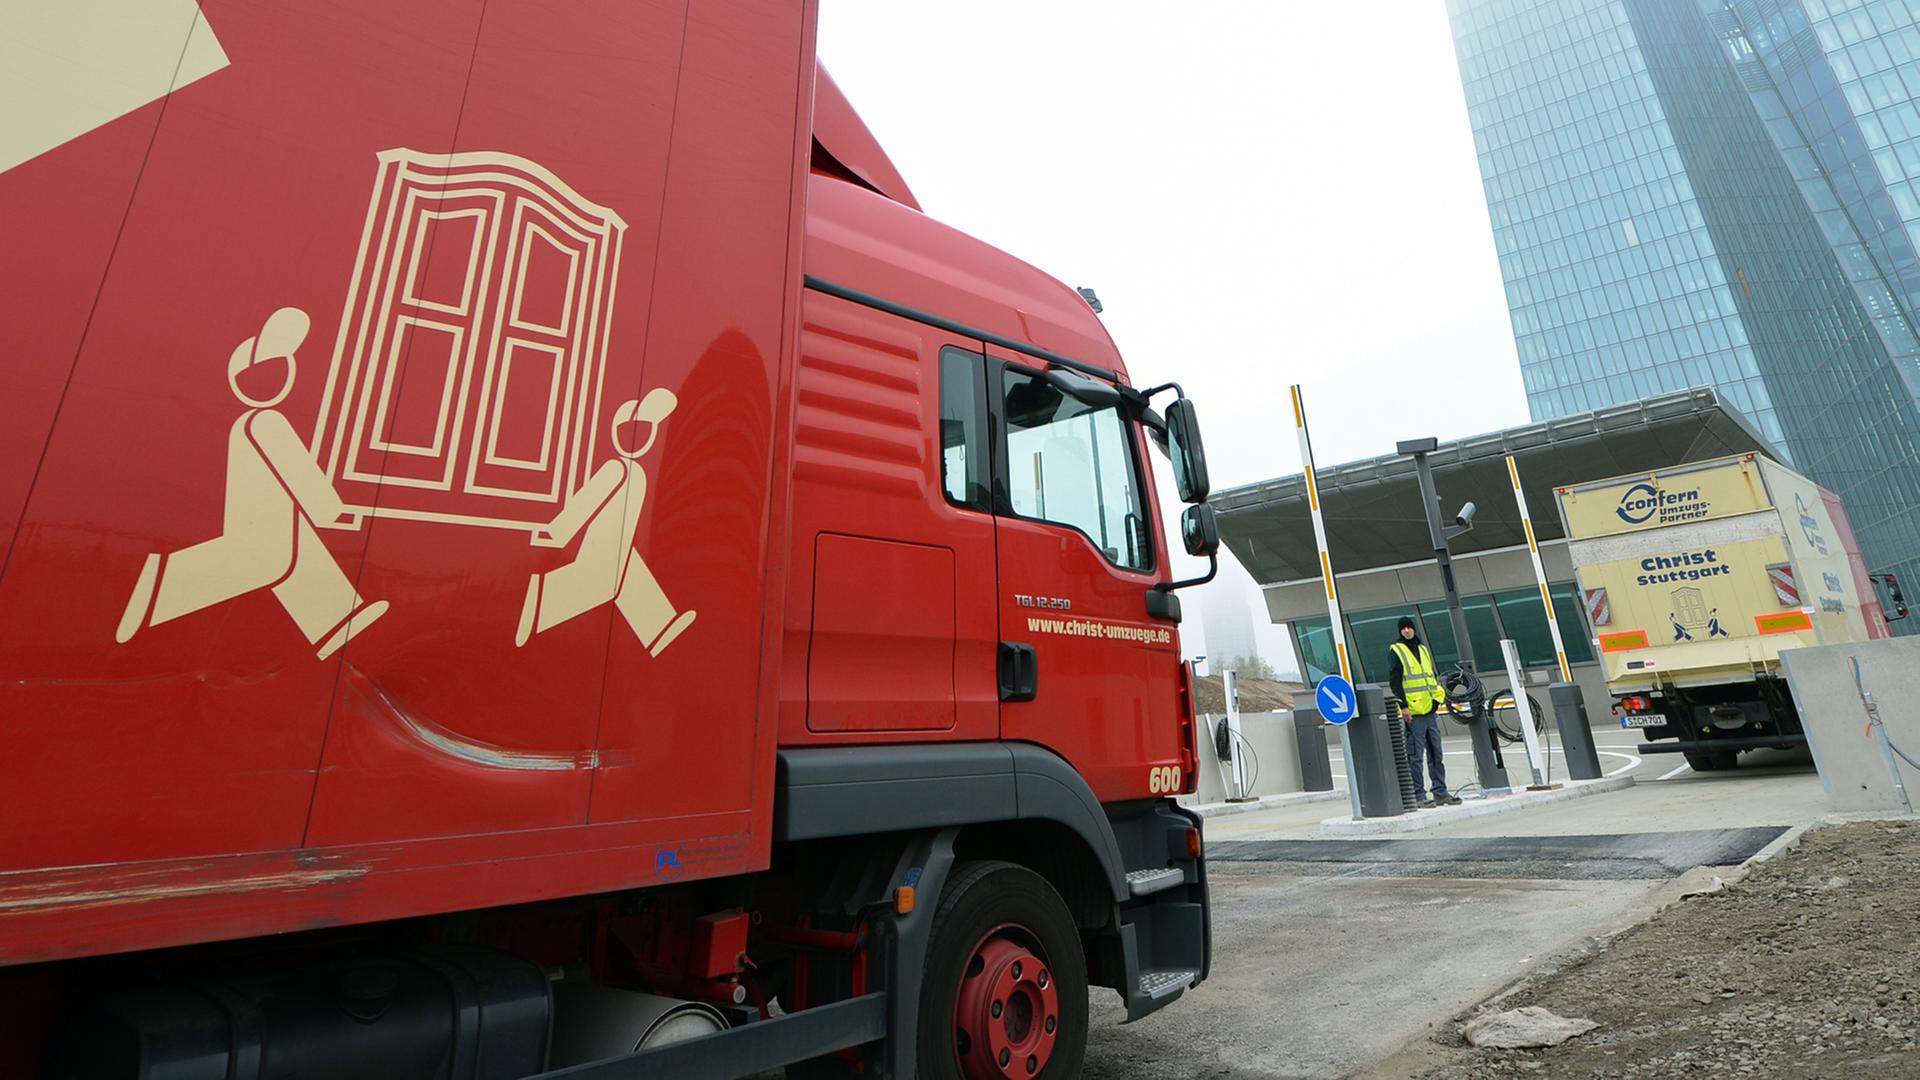 Lastwagen eines Umzugsunternehmens fahren am 01.11.2014 in Frankfurt am Main (Hessen) durch ein Tor der neuen Europäischen Zentralbank (EZB).